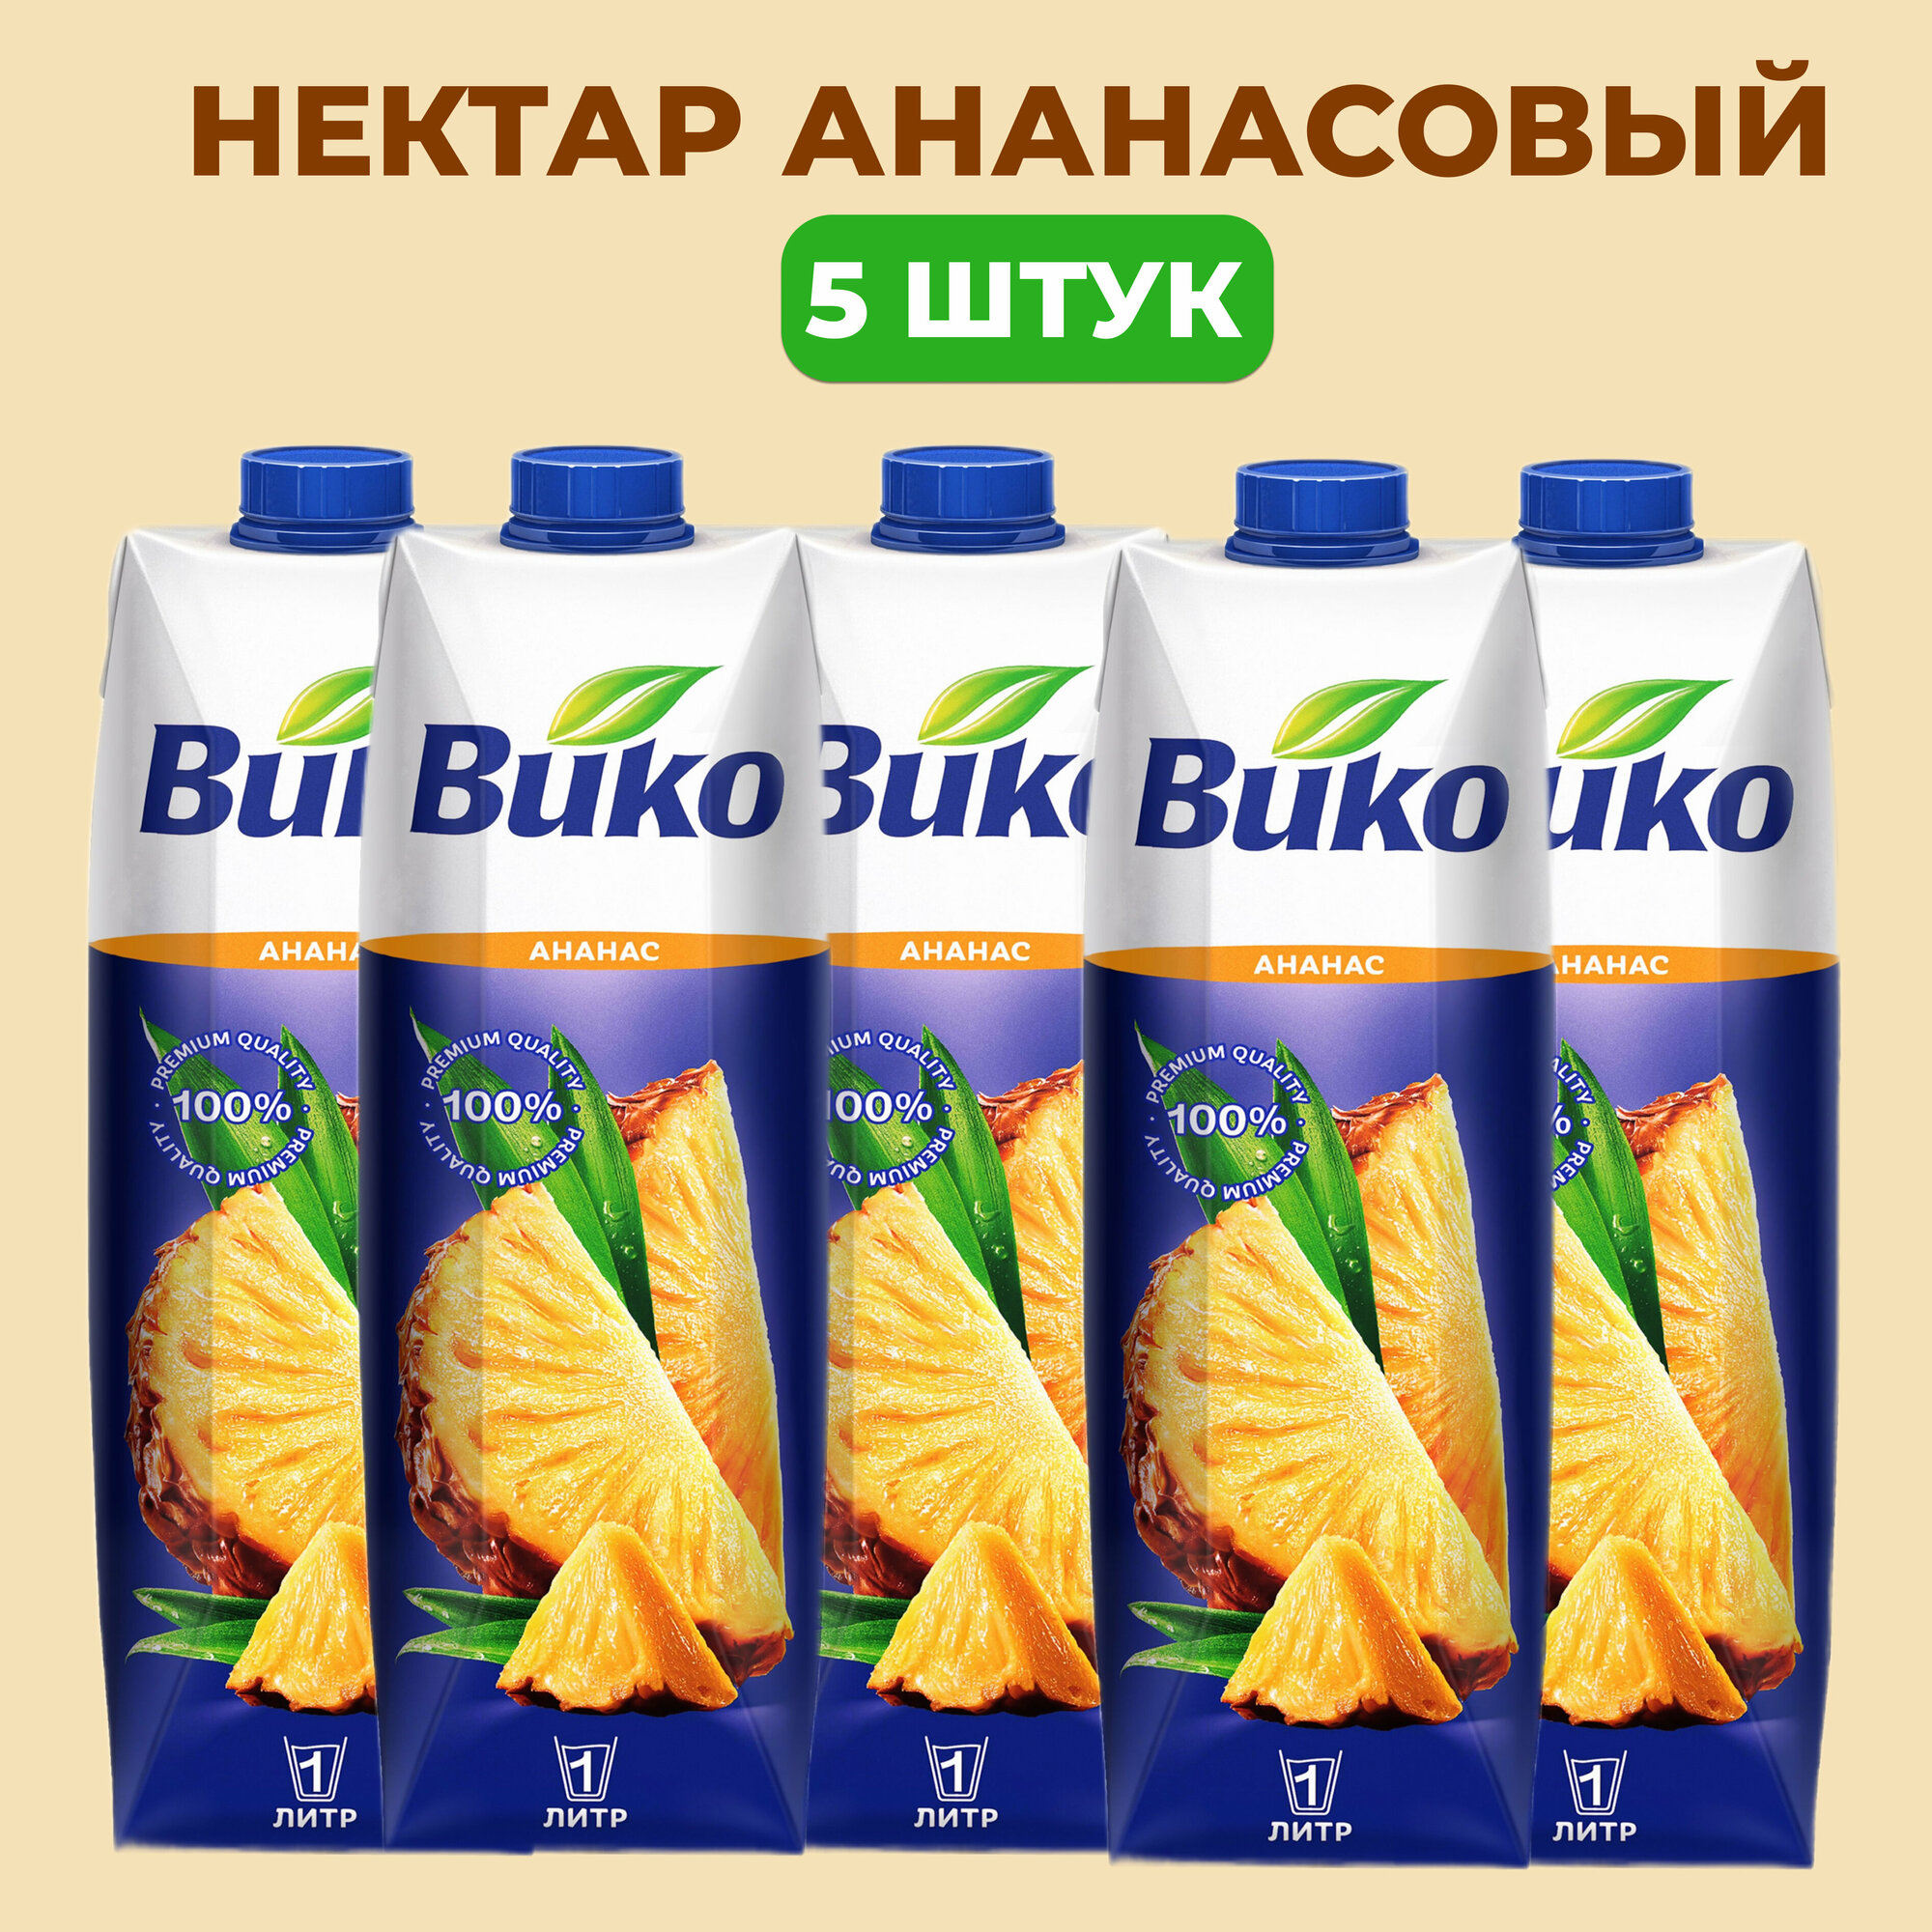 Нектар ананасовый натуральный премиум, Вико, 1 литр*5 штук